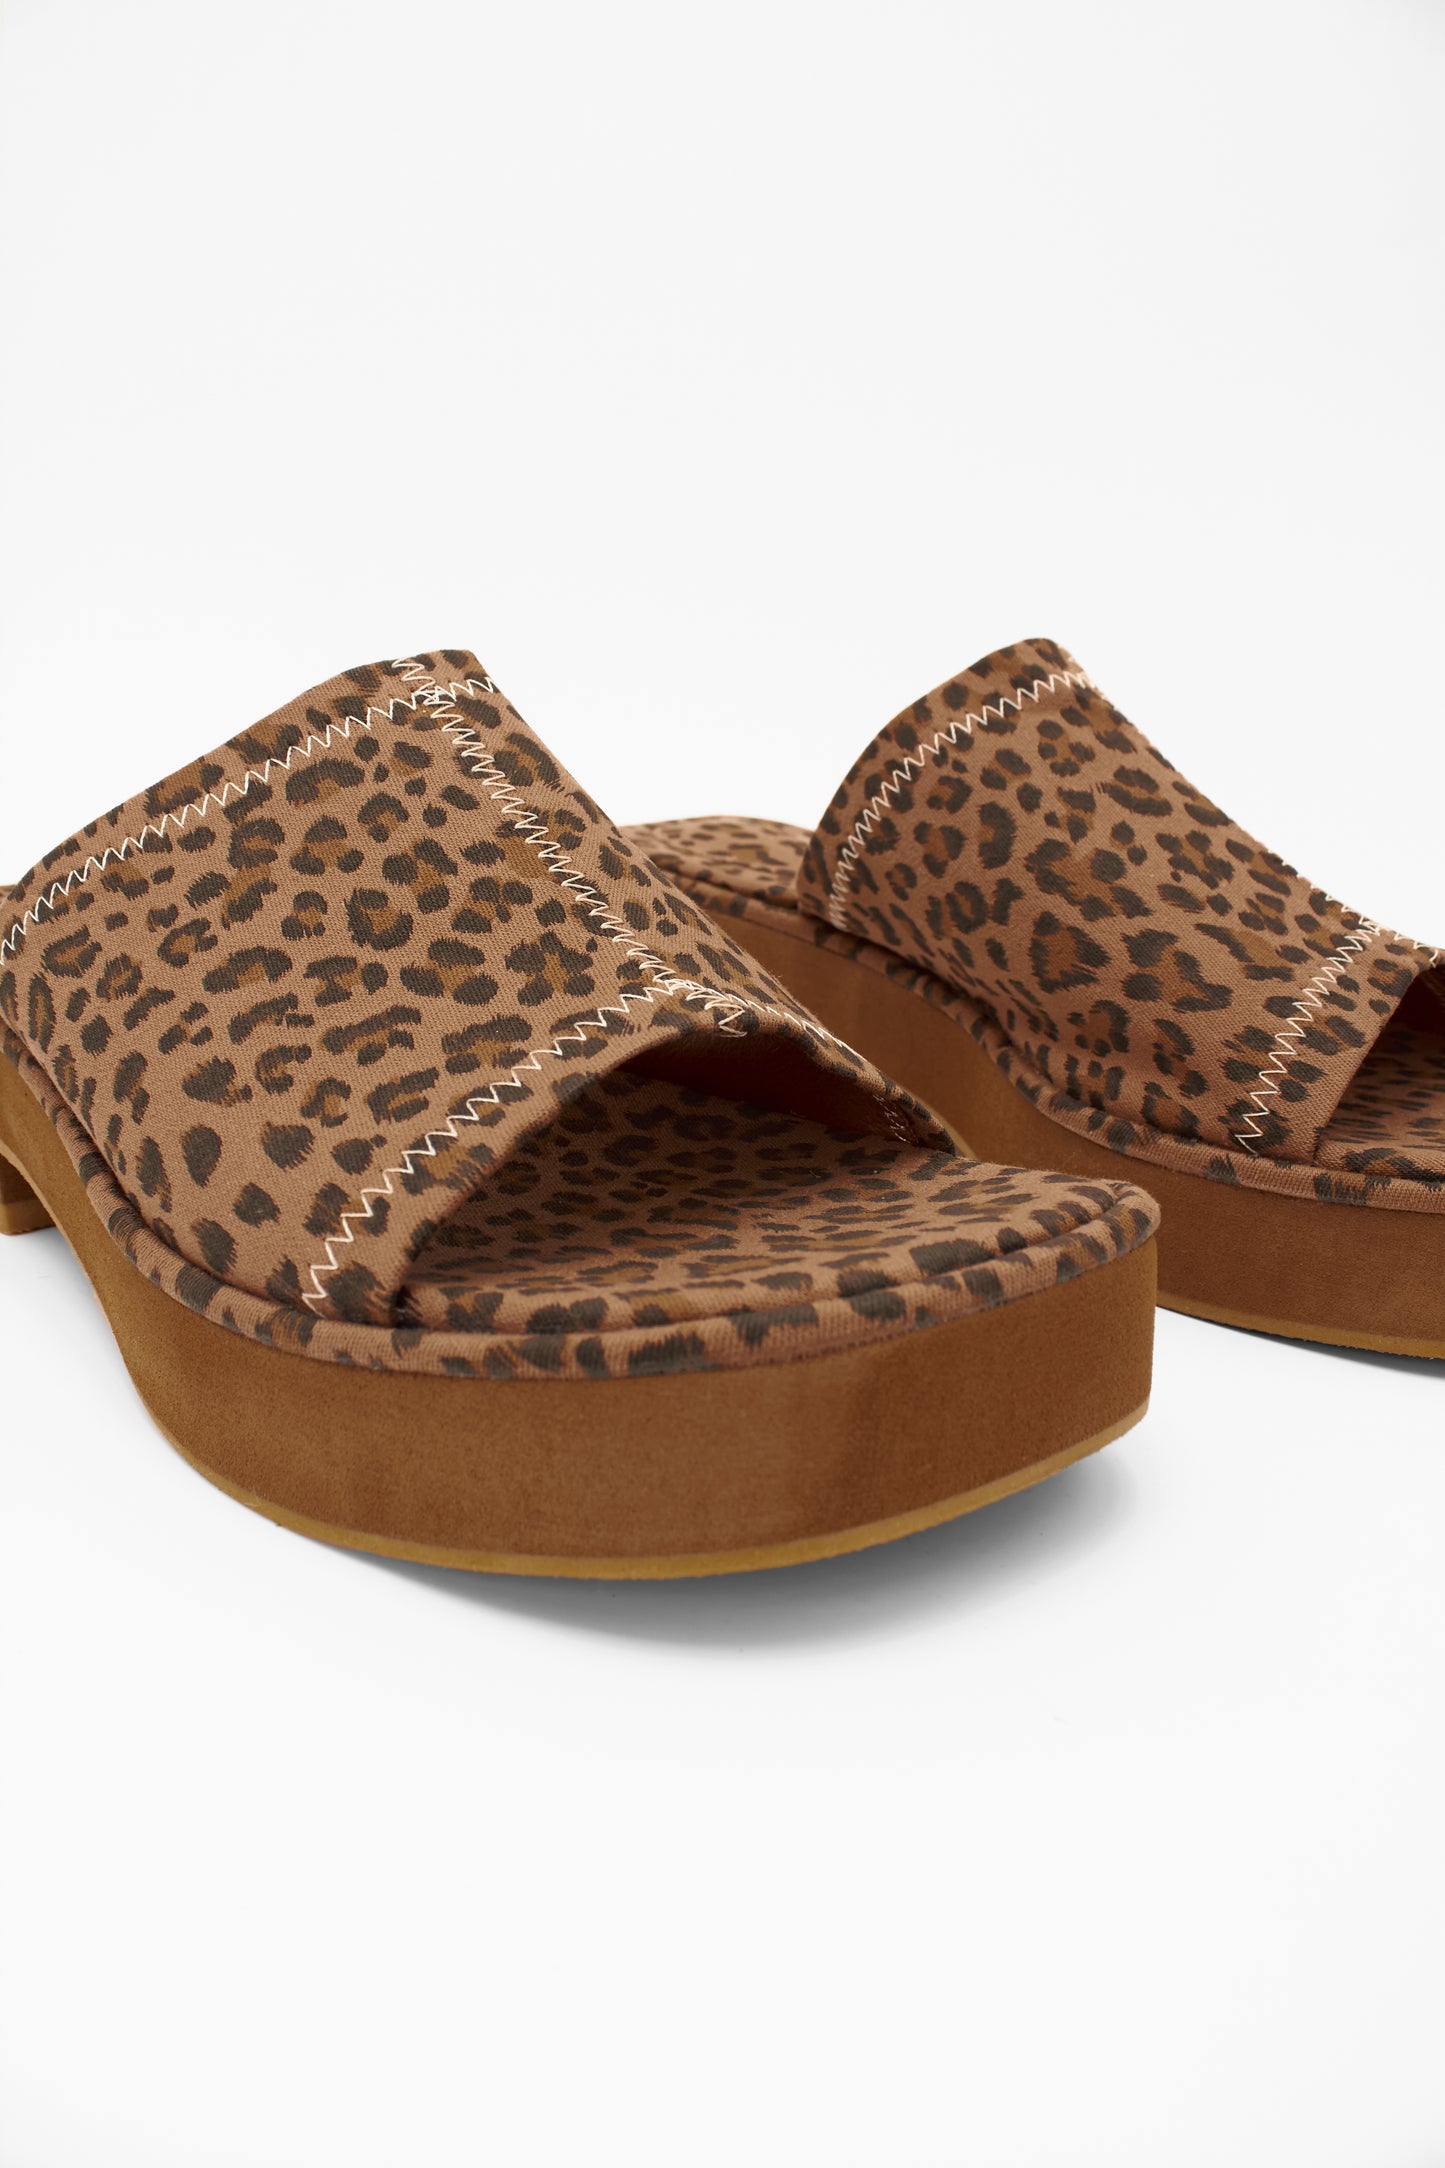 Slide Sandals, Leopard